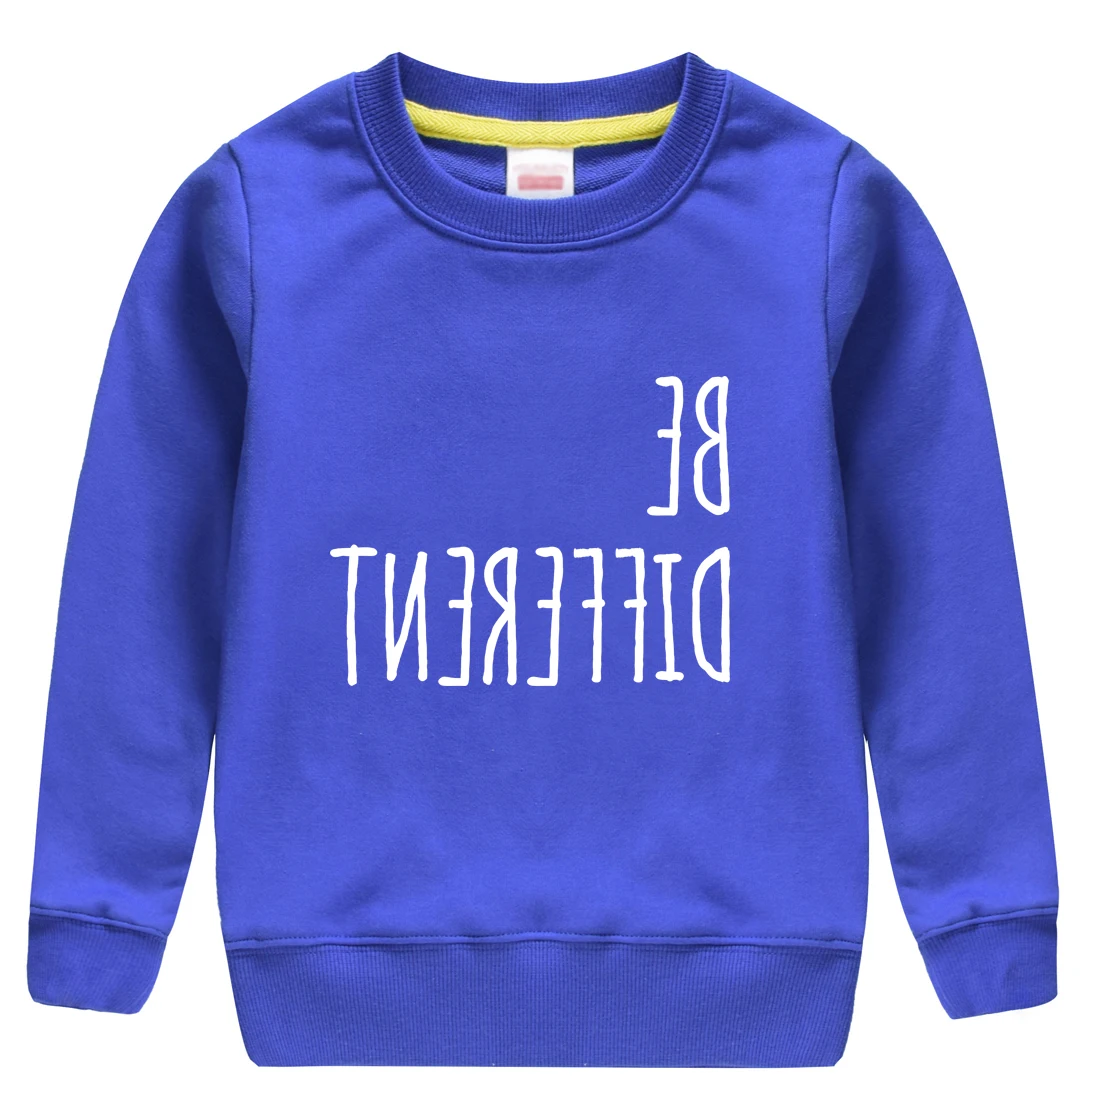 Be different/ г. Новая модная теплая хлопковая толстовка худи Топ для маленьких мальчиков и девочек, мягкий полувер, дизайн для детей от 4 до 13 лет, Детская футболка - Цвет: blue